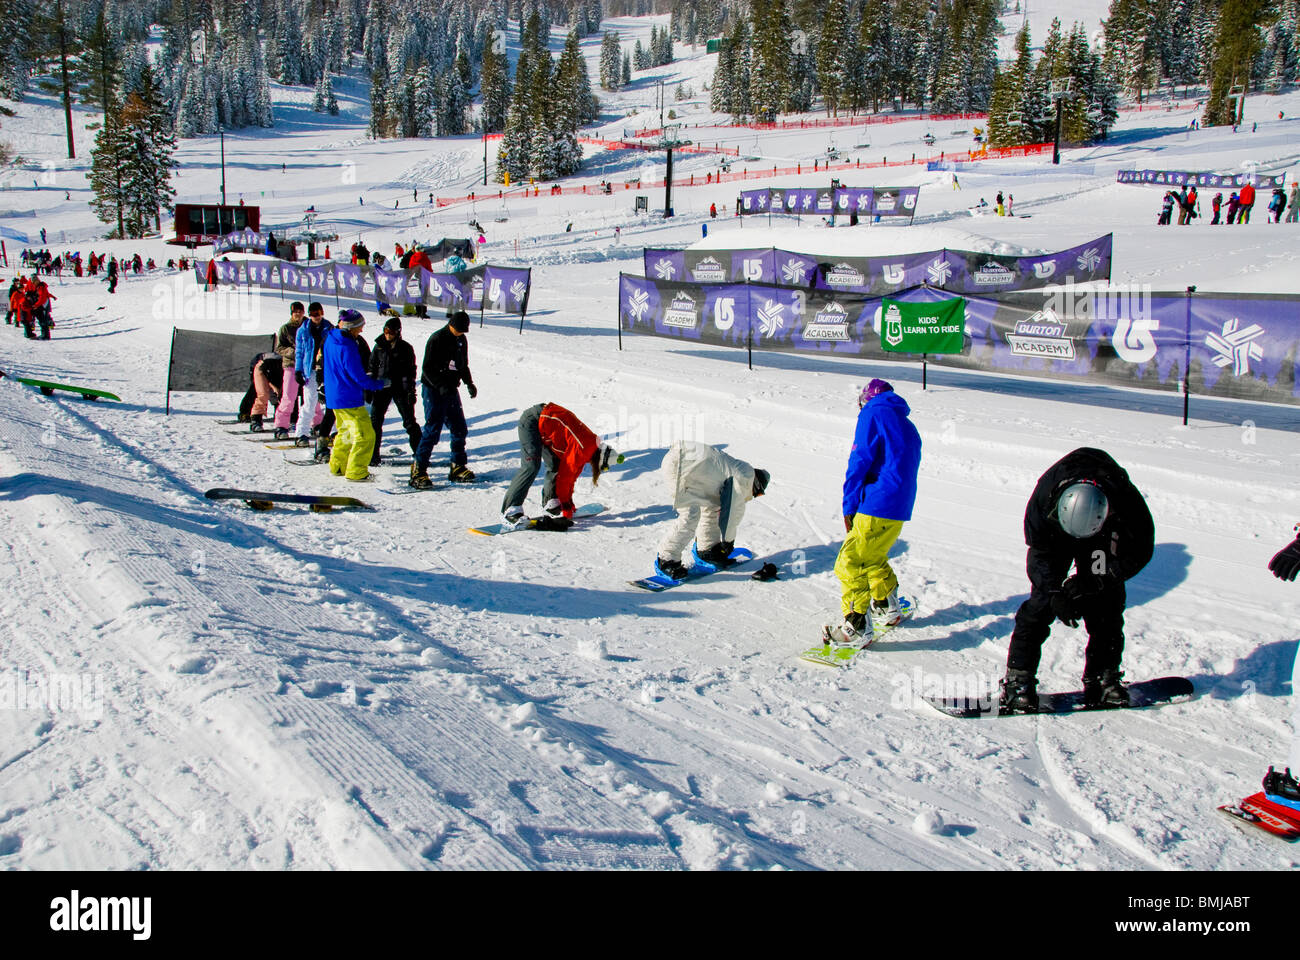 Scène d'hiver débutants des cours de ski et de snowboard snowboards skis Northstar Resort Village North Lake Tahoe California USA ice Banque D'Images